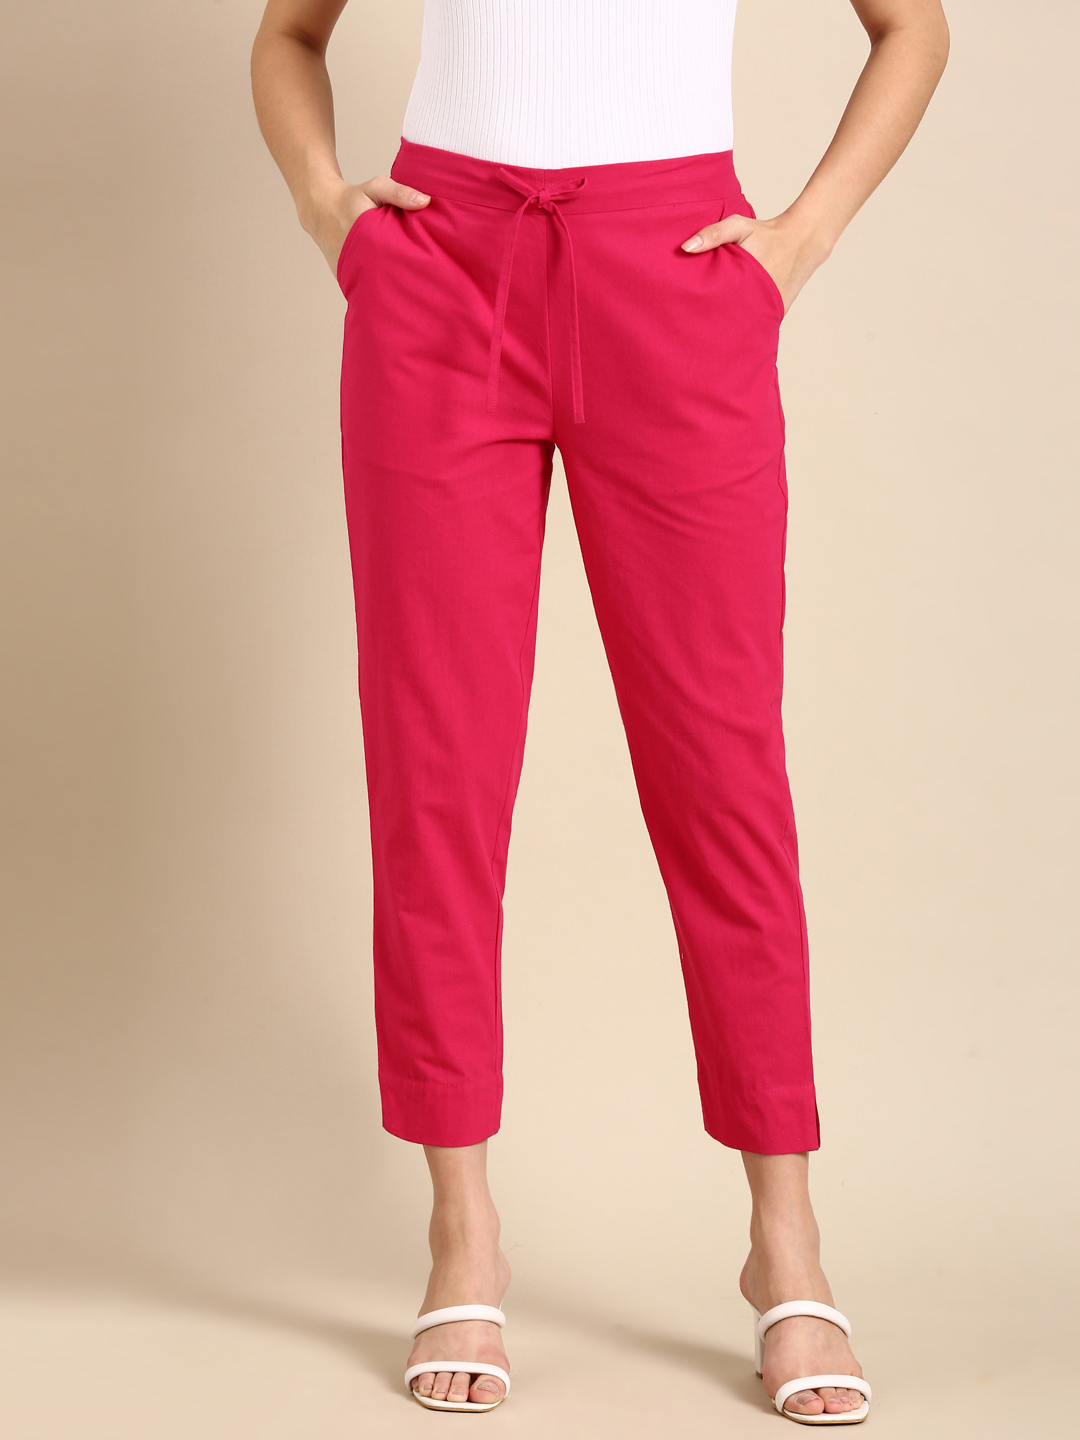 Hot Pink Classic pants